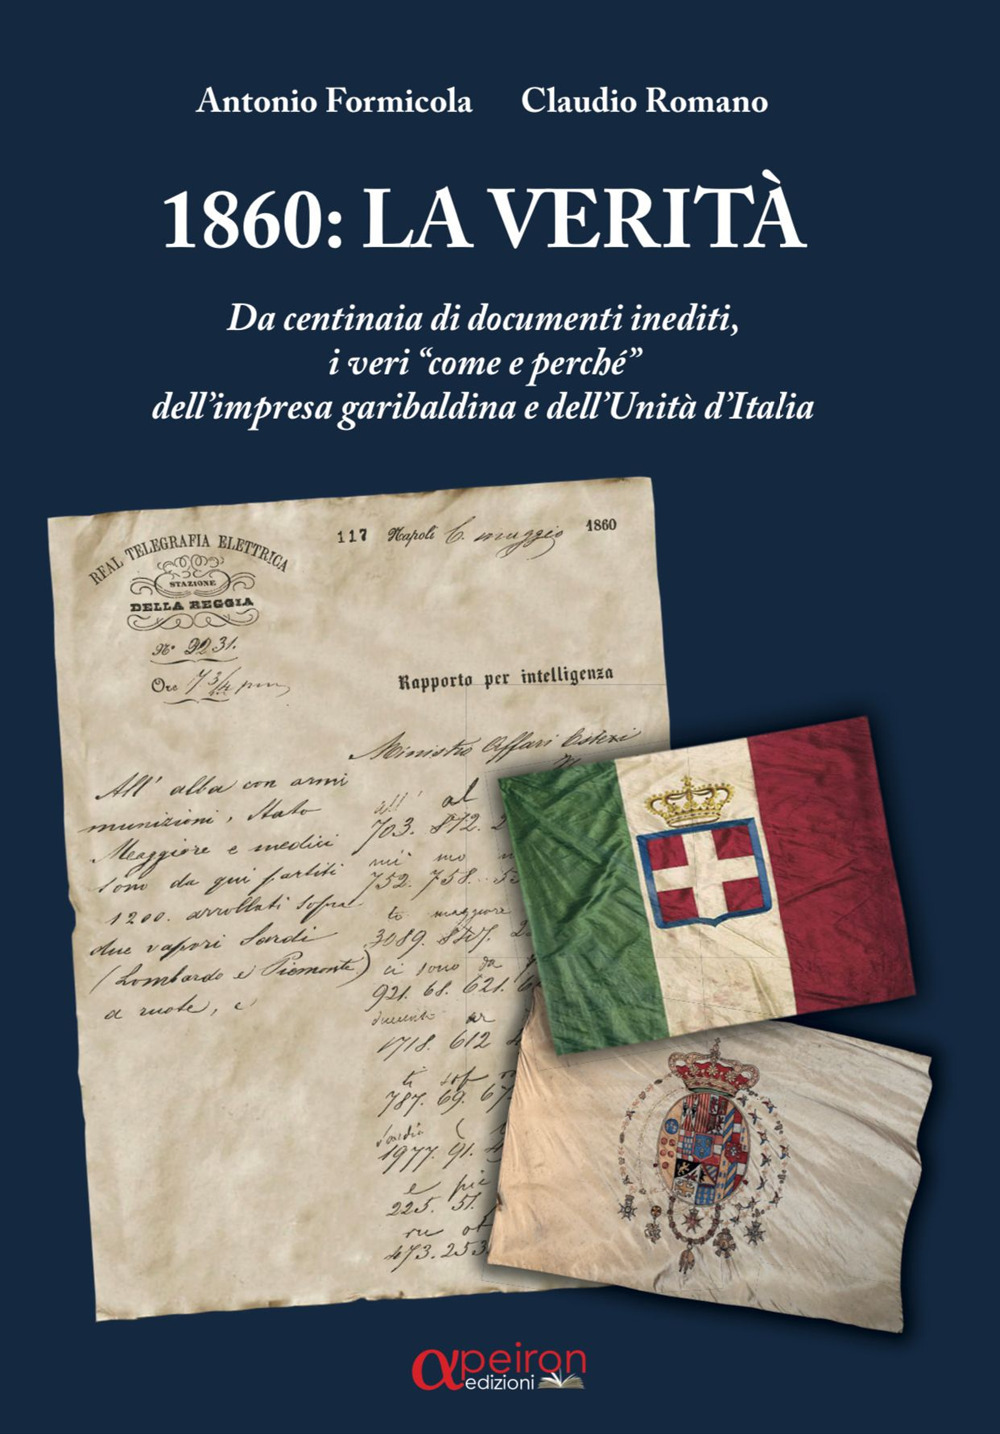 1860: la verità. Da centinaia di documenti inediti, i «veri come e perché» dell'impresa garibaldina e dell'Unità d'Italia